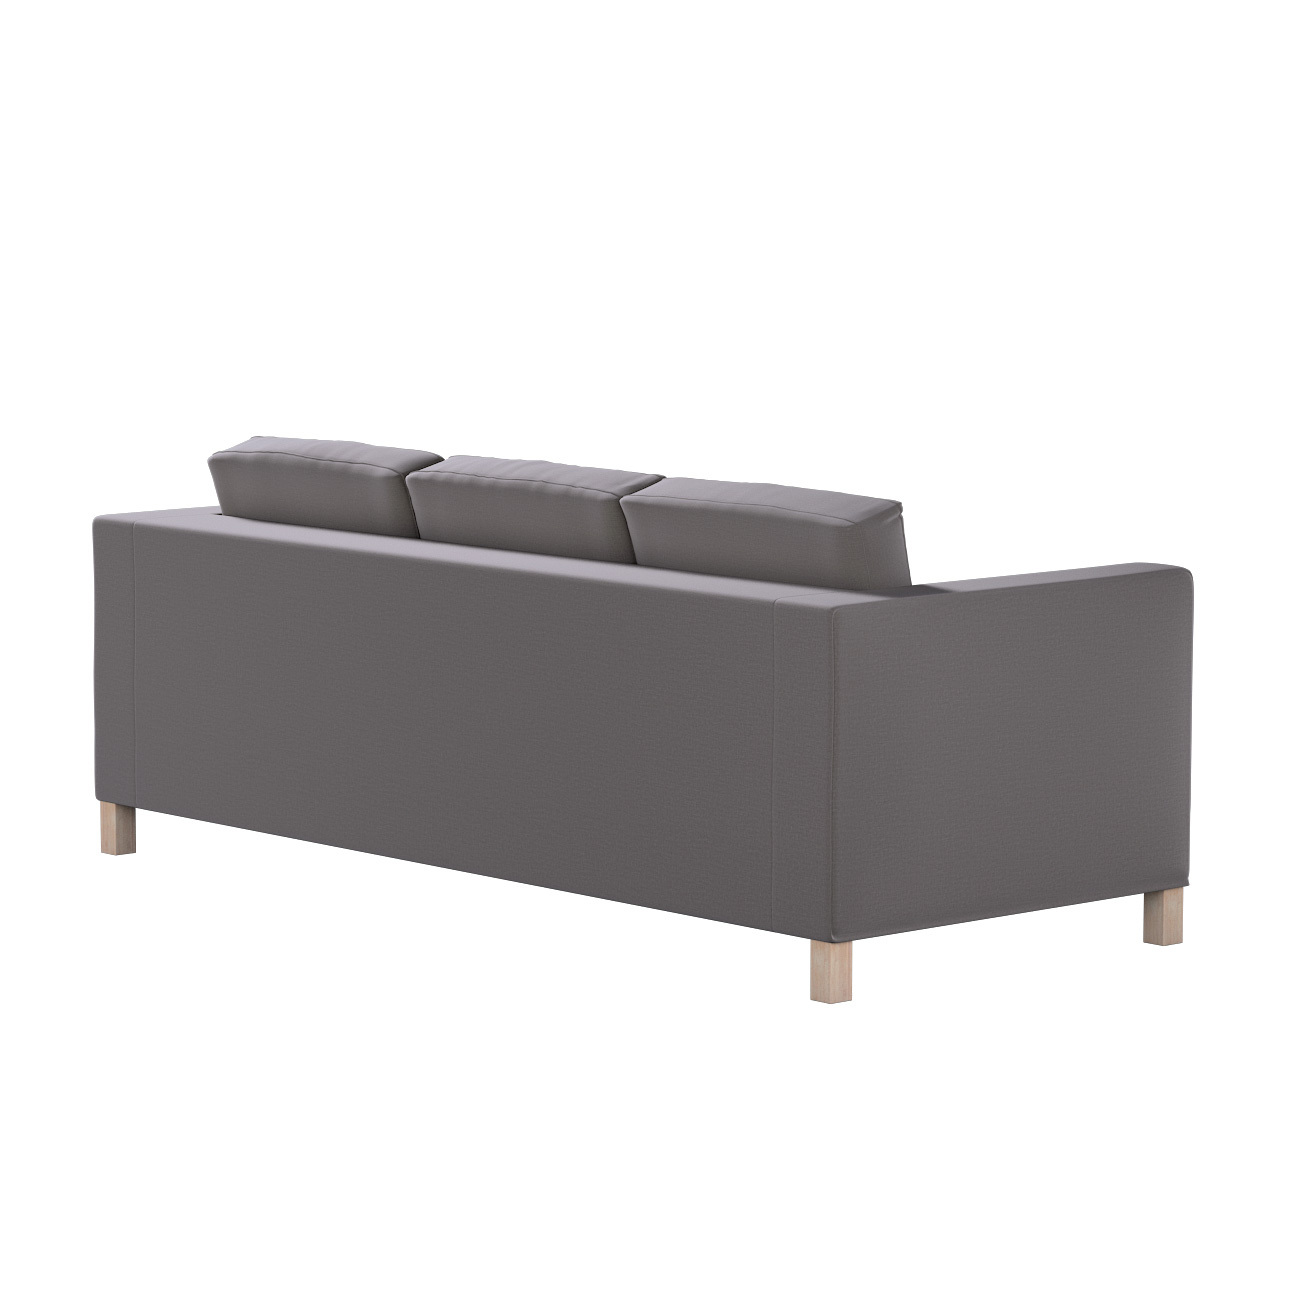 Bezug für Karlanda 3-Sitzer Sofa nicht ausklappbar, kurz, braun, Bezug für günstig online kaufen